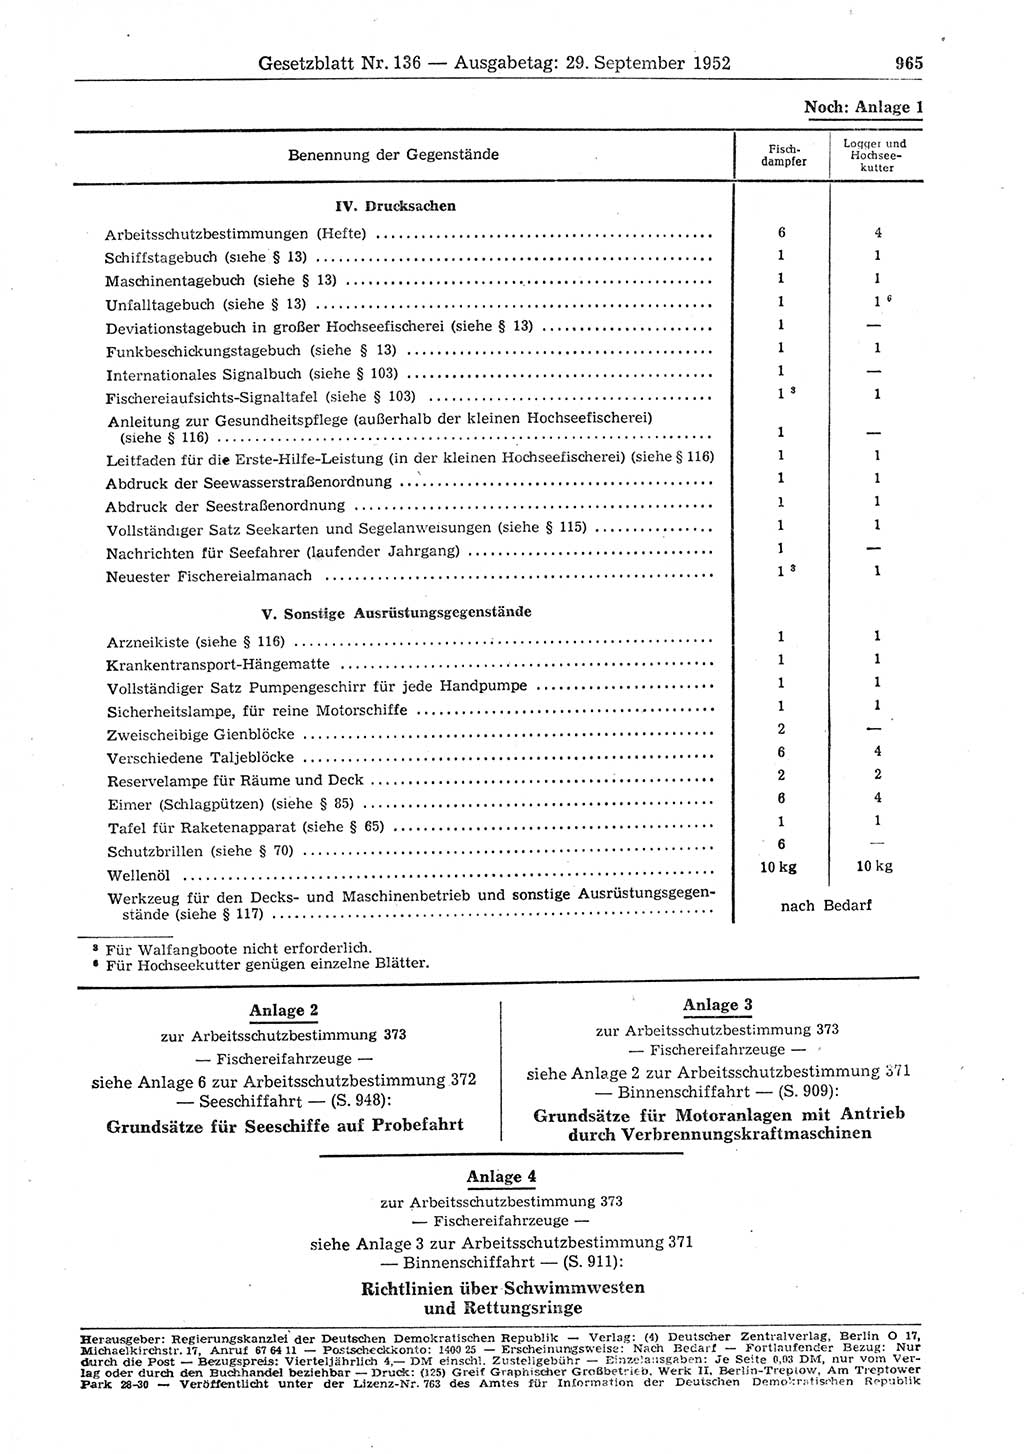 Gesetzblatt (GBl.) der Deutschen Demokratischen Republik (DDR) 1952, Seite 965 (GBl. DDR 1952, S. 965)